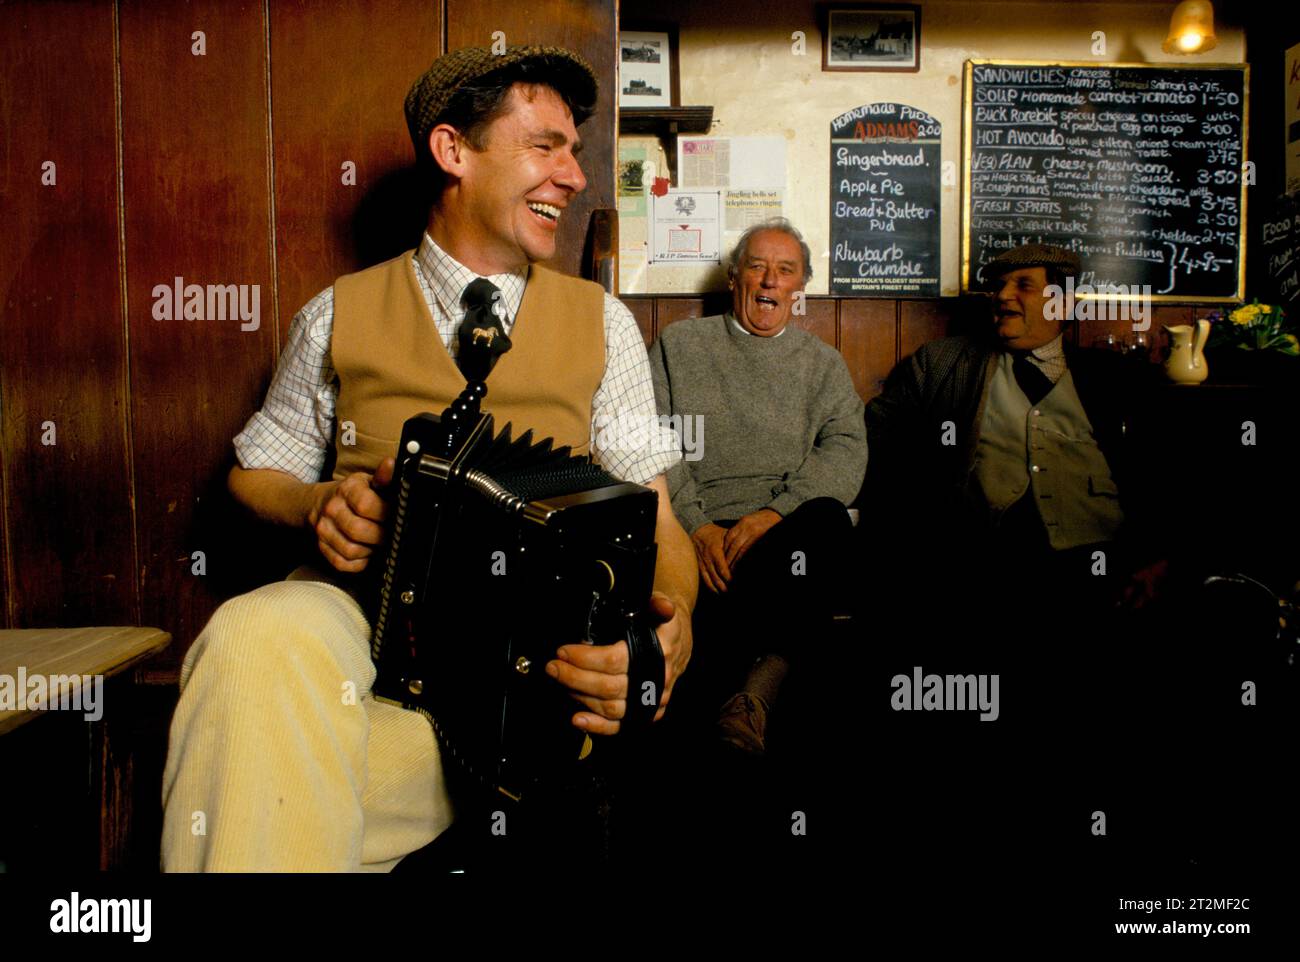 Traditionelle Volksmusik UK 1980s Bauern und Landsleute treffen sich im Kings Head, auch bekannt als The Low House Pub, in Laxfield. Jeden Sonntagmorgen werden traditionelle Geschichten, Gedichte und Volkslieder in ungezwungener Weise vorgetragen. Ein einheimischer Bauer spielt ein Melodeon. Laxfield, Suffolk, England 1985. 1980er Jahre HOMER SYKES Stockfoto